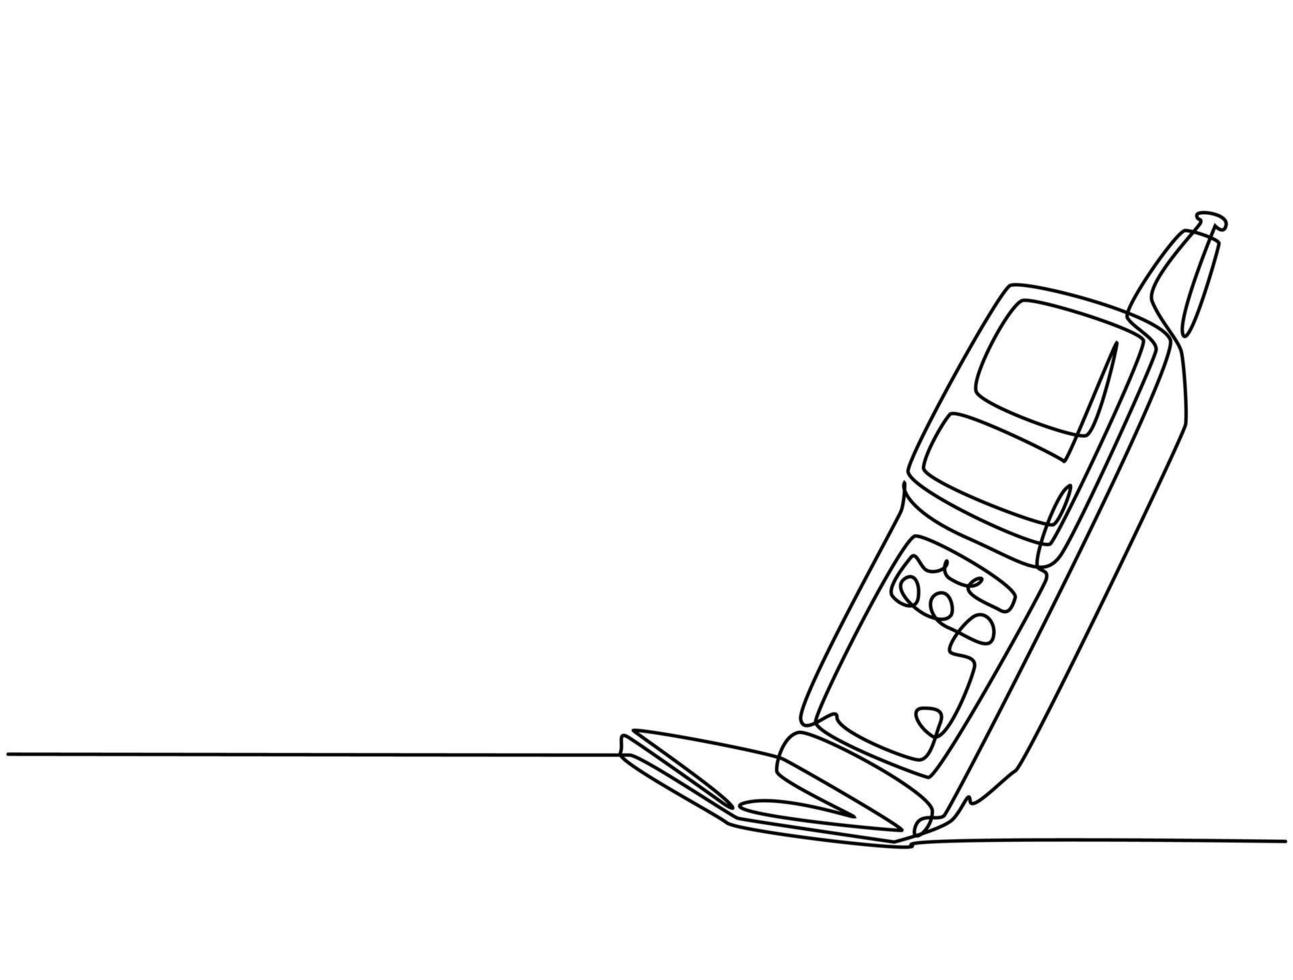 un seul dessin au trait de l'ancien téléphone portable rétro flip. téléphone mobile classique vintage pour communiquer le concept de ligne continue graphique dessiner illustration vectorielle de conception vecteur